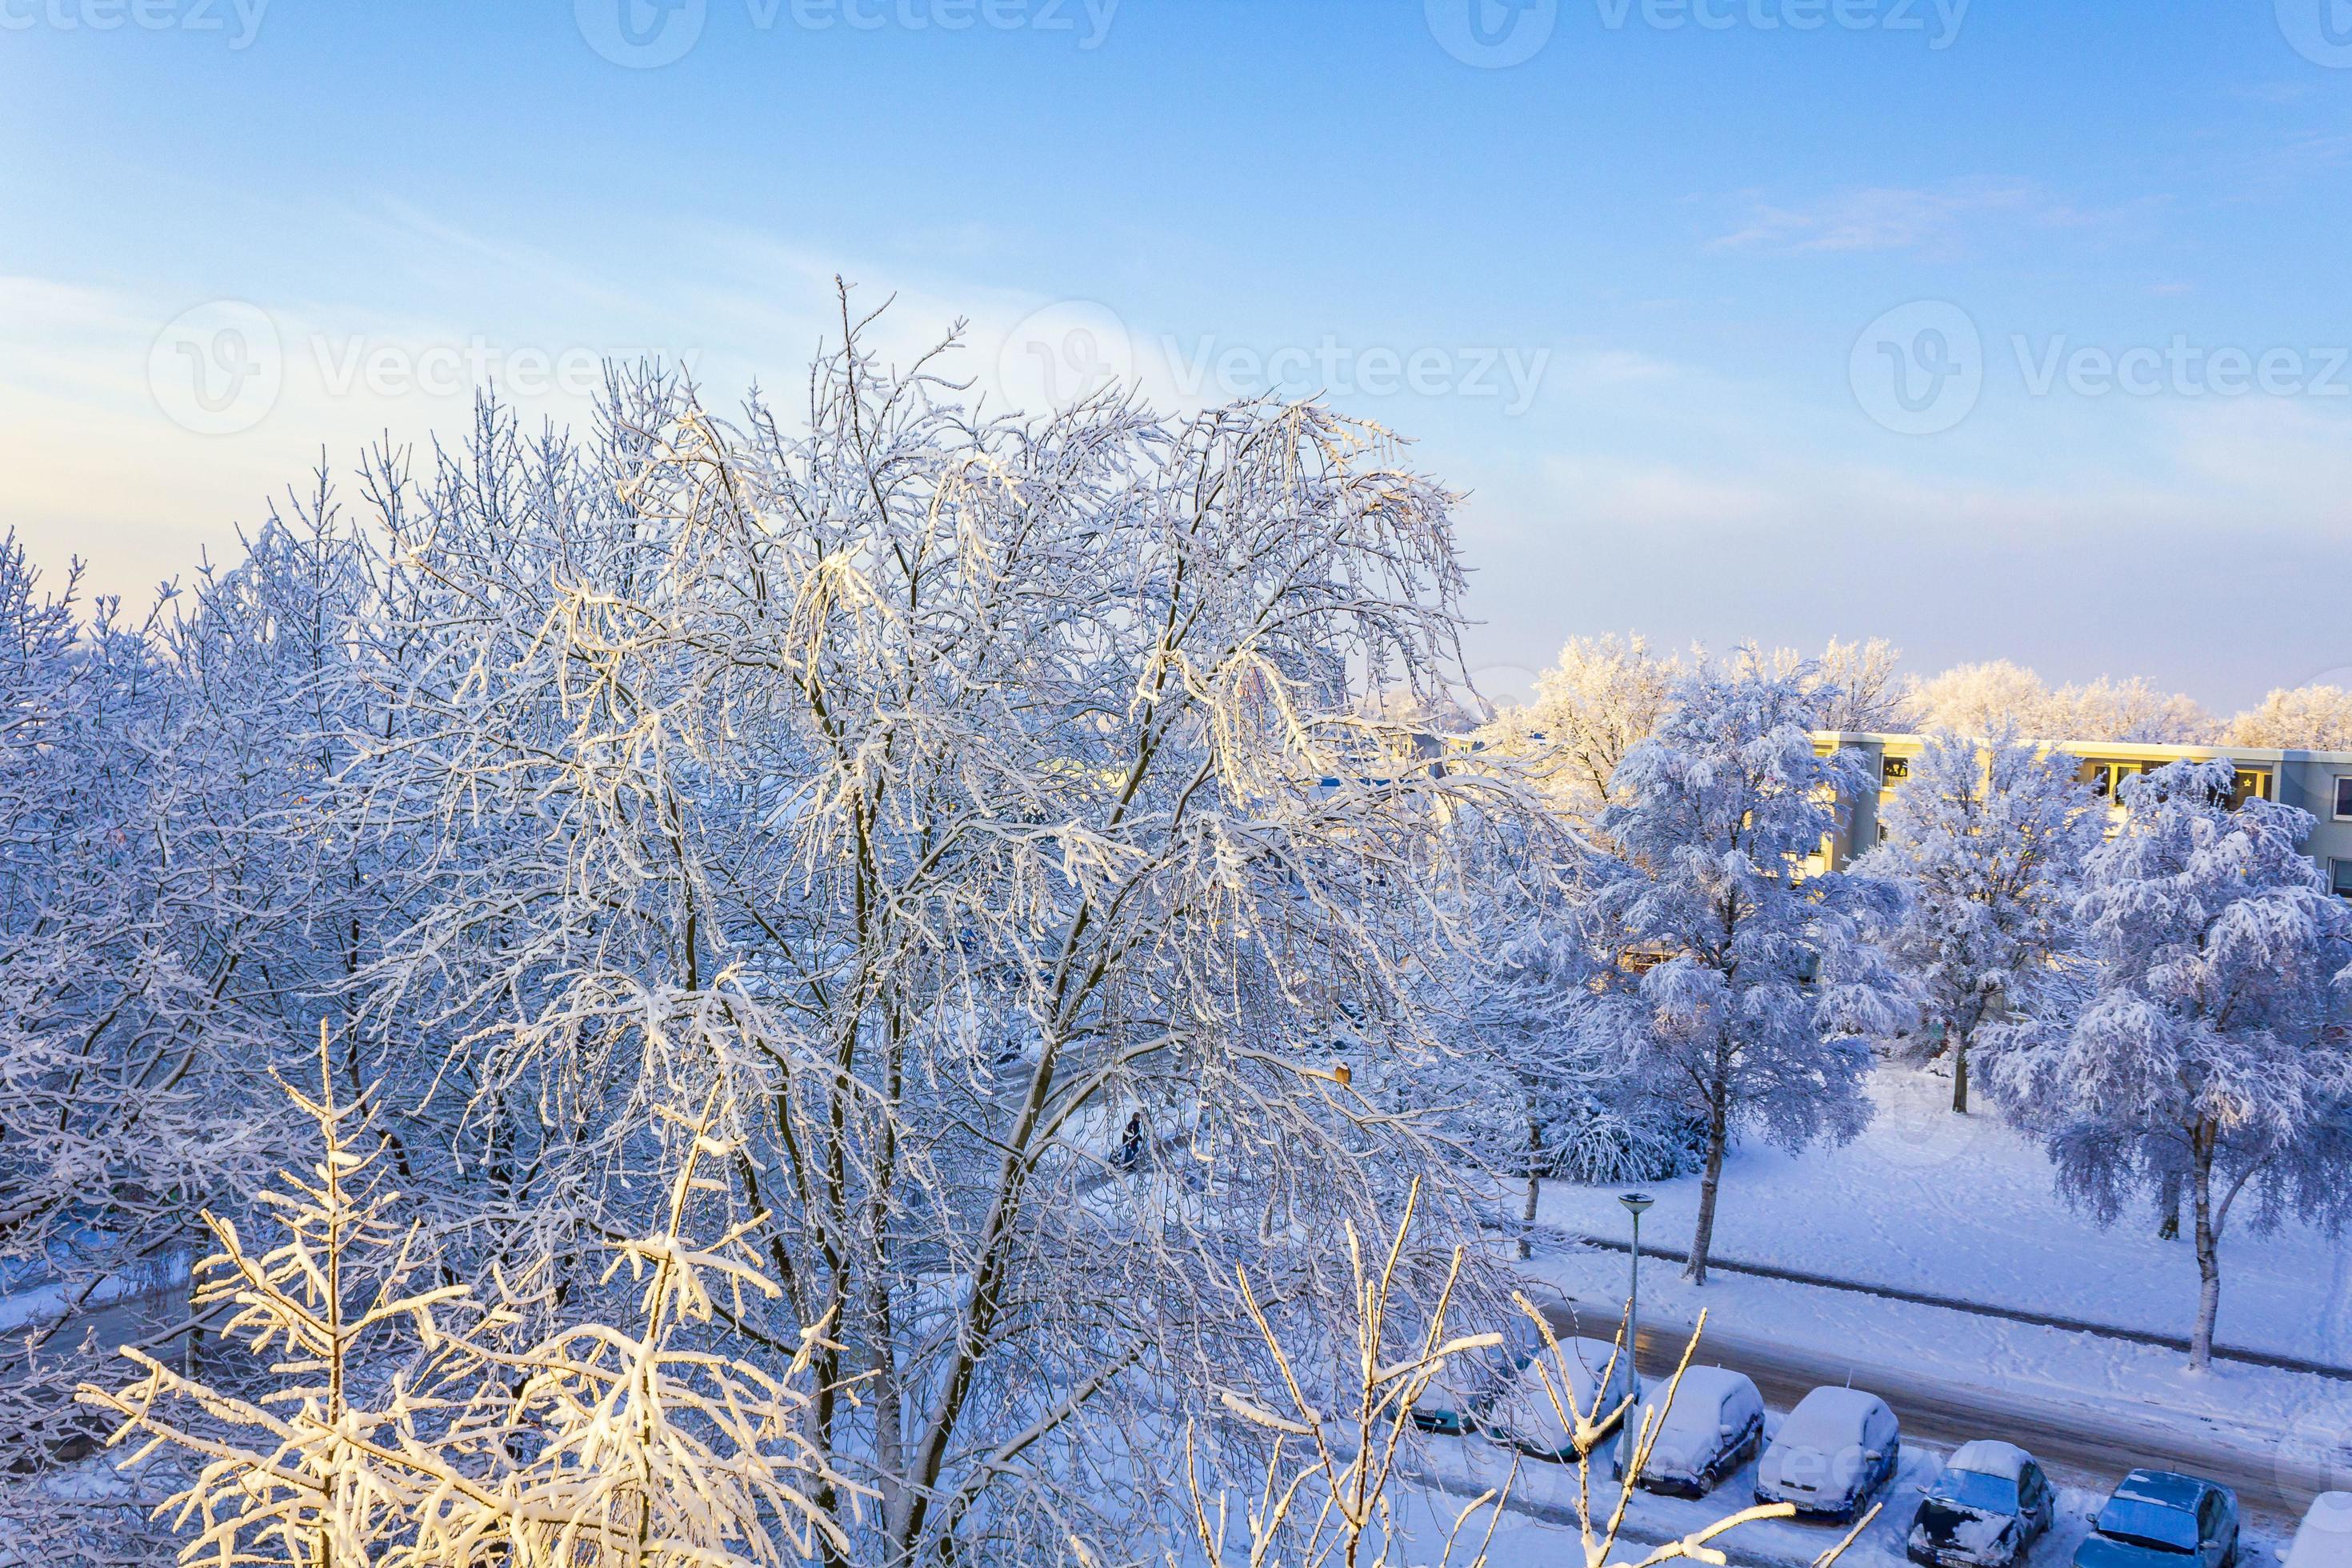 Wegversperring streep Tijdig besneeuwde winter sneeuw en ijs landschap panorama uitzicht bremerhaven  duitsland. 9225927 stockfoto bij Vecteezy